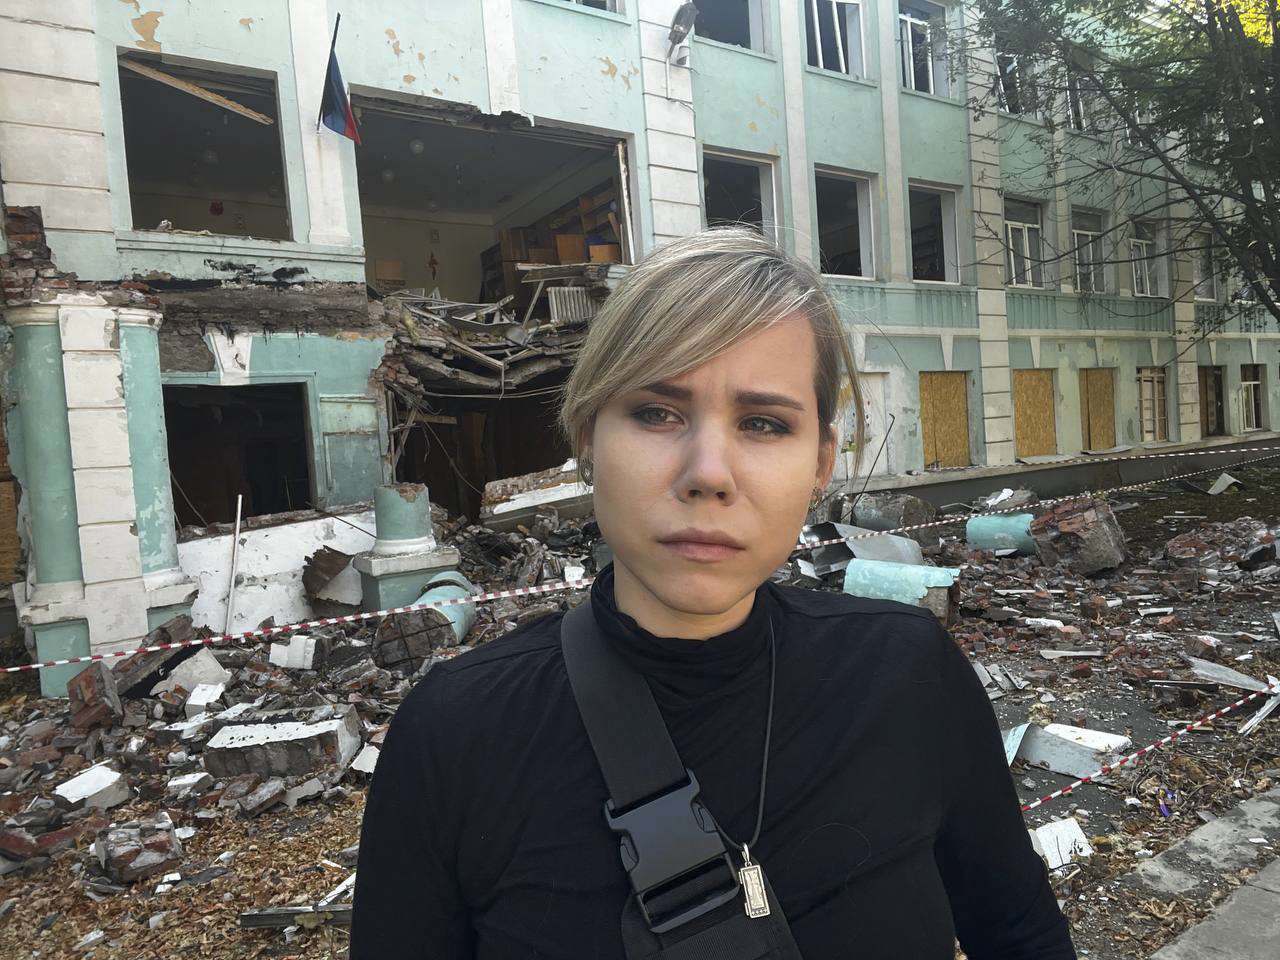 Daria Dugina, hija del idelogo ruso Alexander Dugin, asesinada ayer en un atentado.